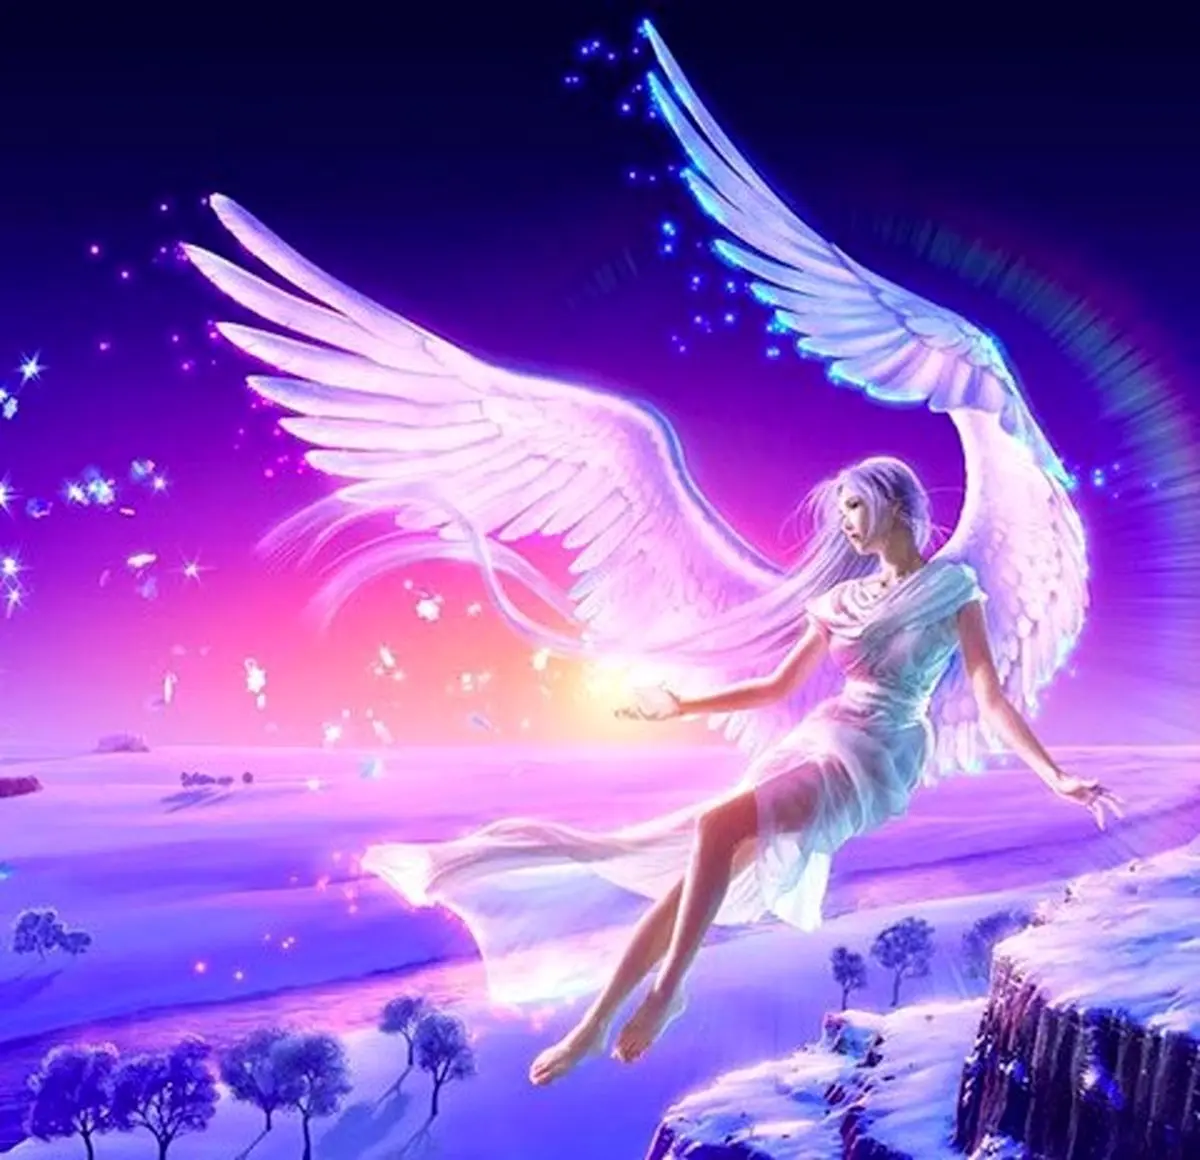 فال فرشتگان 7 شهریورماه  | فرشتگان برای شما چه پیام مثبتی دارند؟